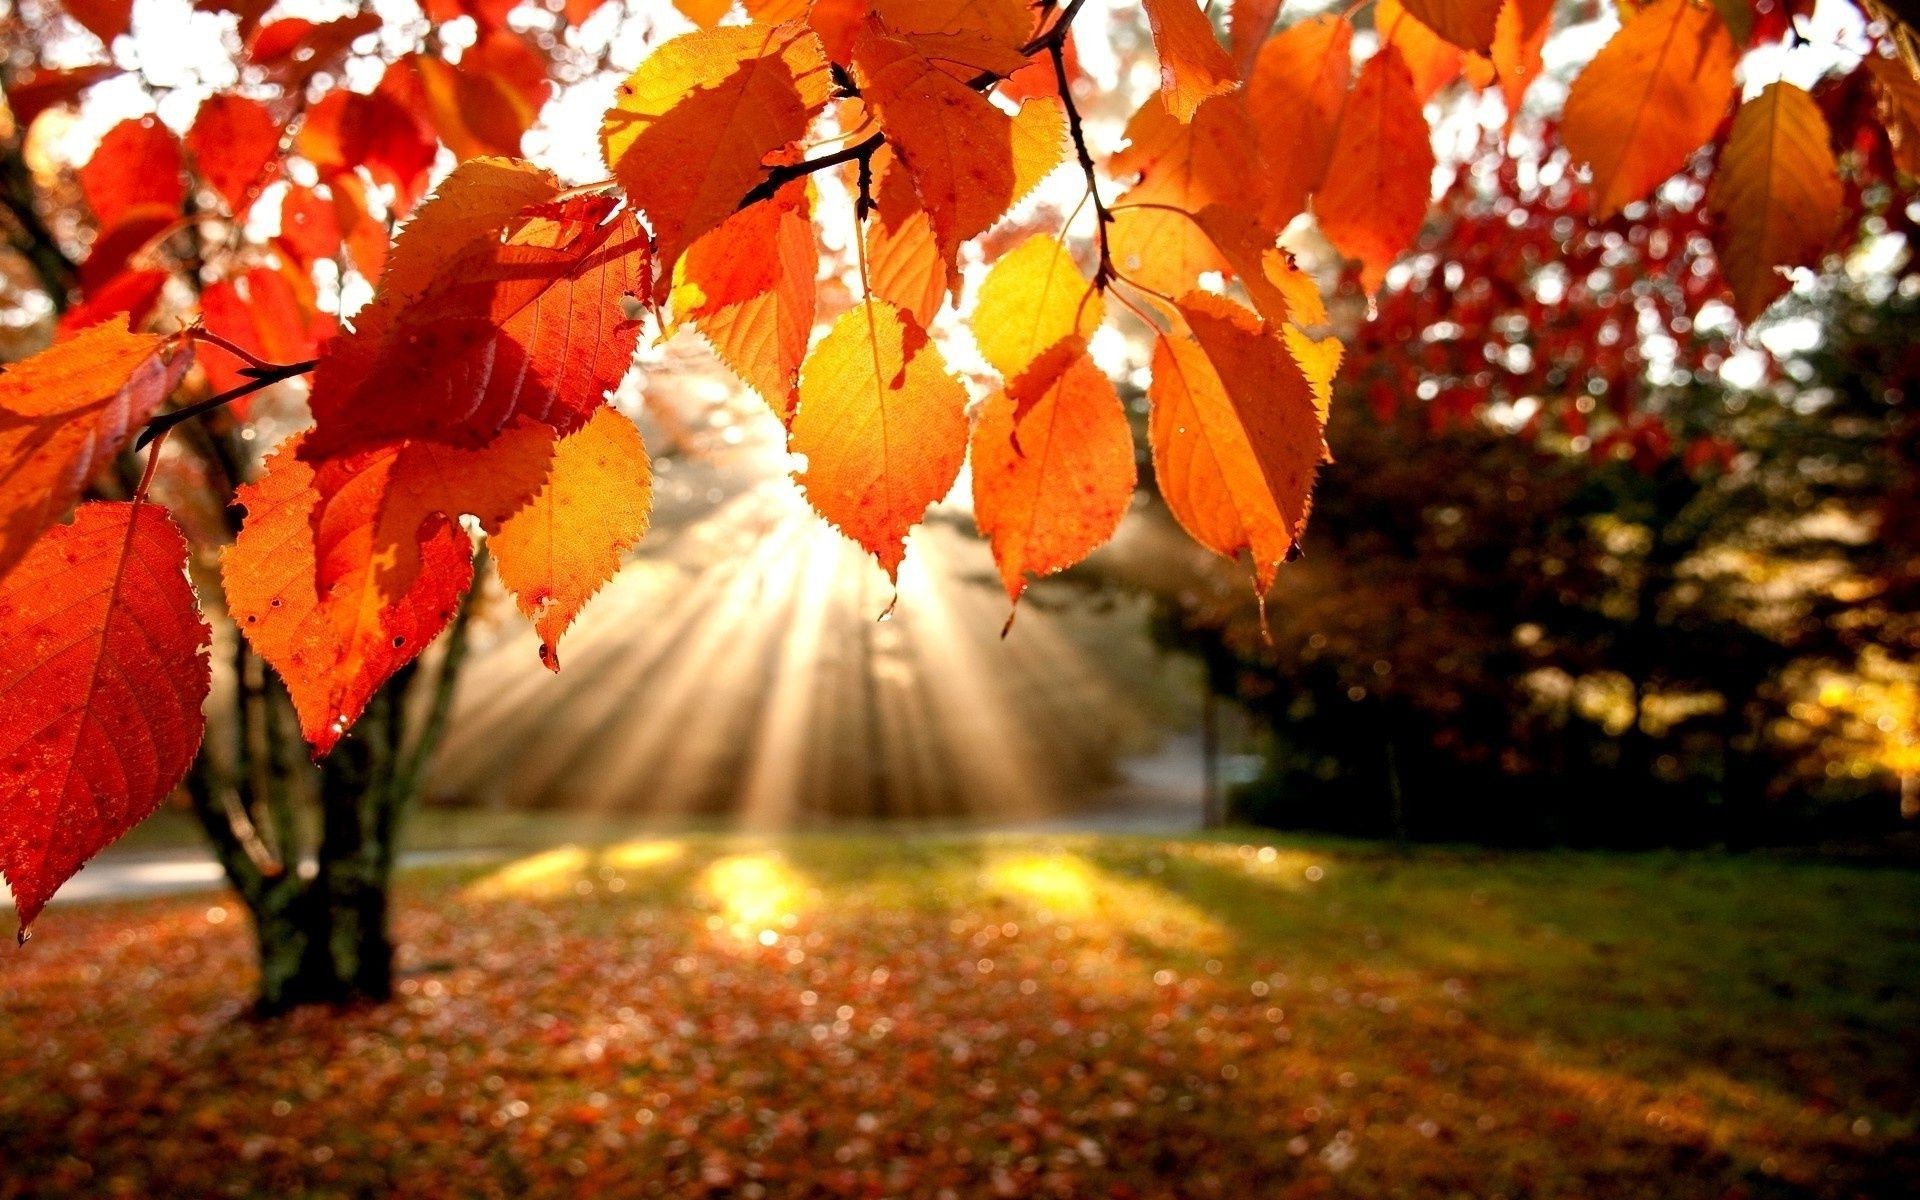 осень осень лист кленовый дерево сезон природа на открытом воздухе золото парк древесины сад яркий цвет флора филиал изменение пышные свет день благодарения